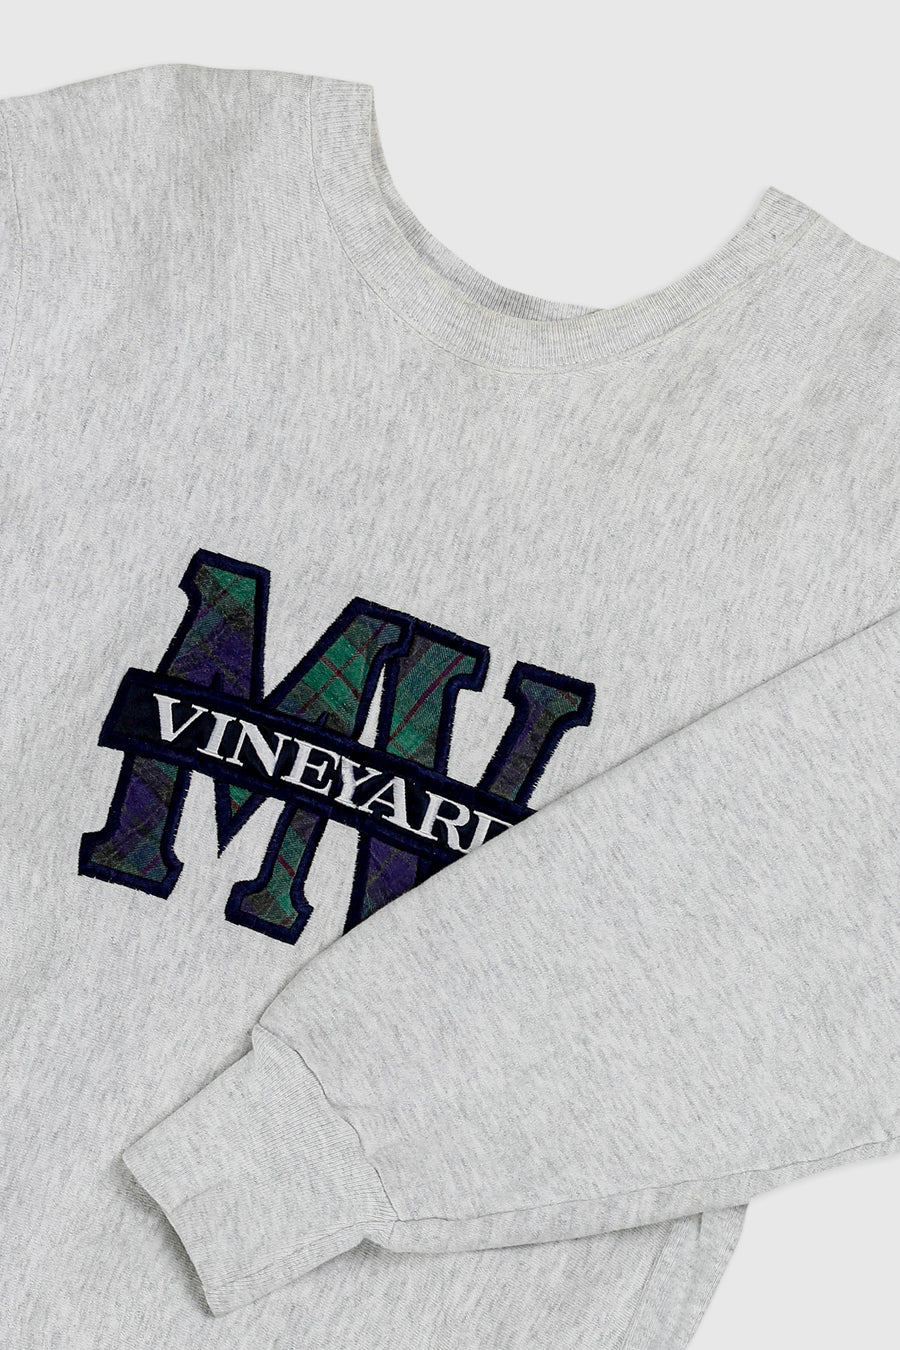 Vintage Vineyard Sweatshirt - L